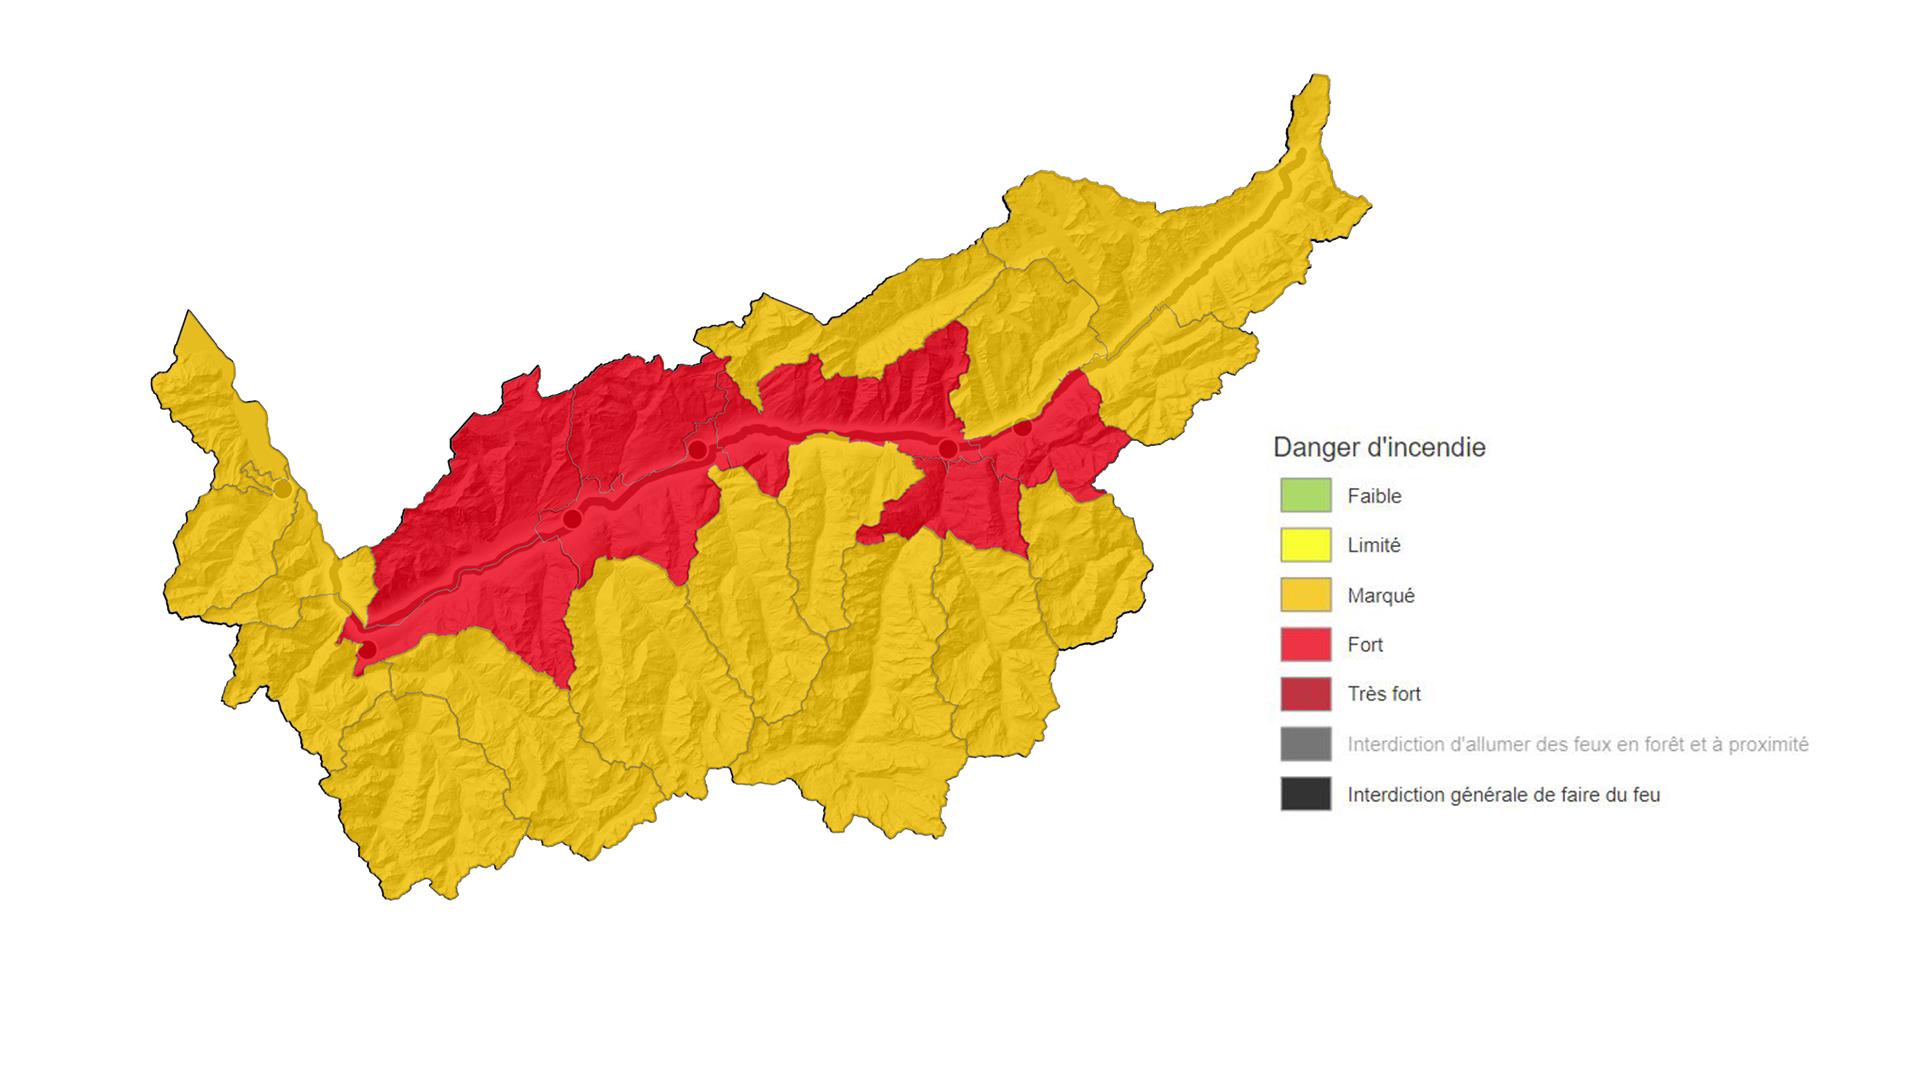 Face au risque d'incendie, le canton du Valais a relevé le niveau de danger de plusieurs districts de "marqué" à "fort" [Canton du Valais]